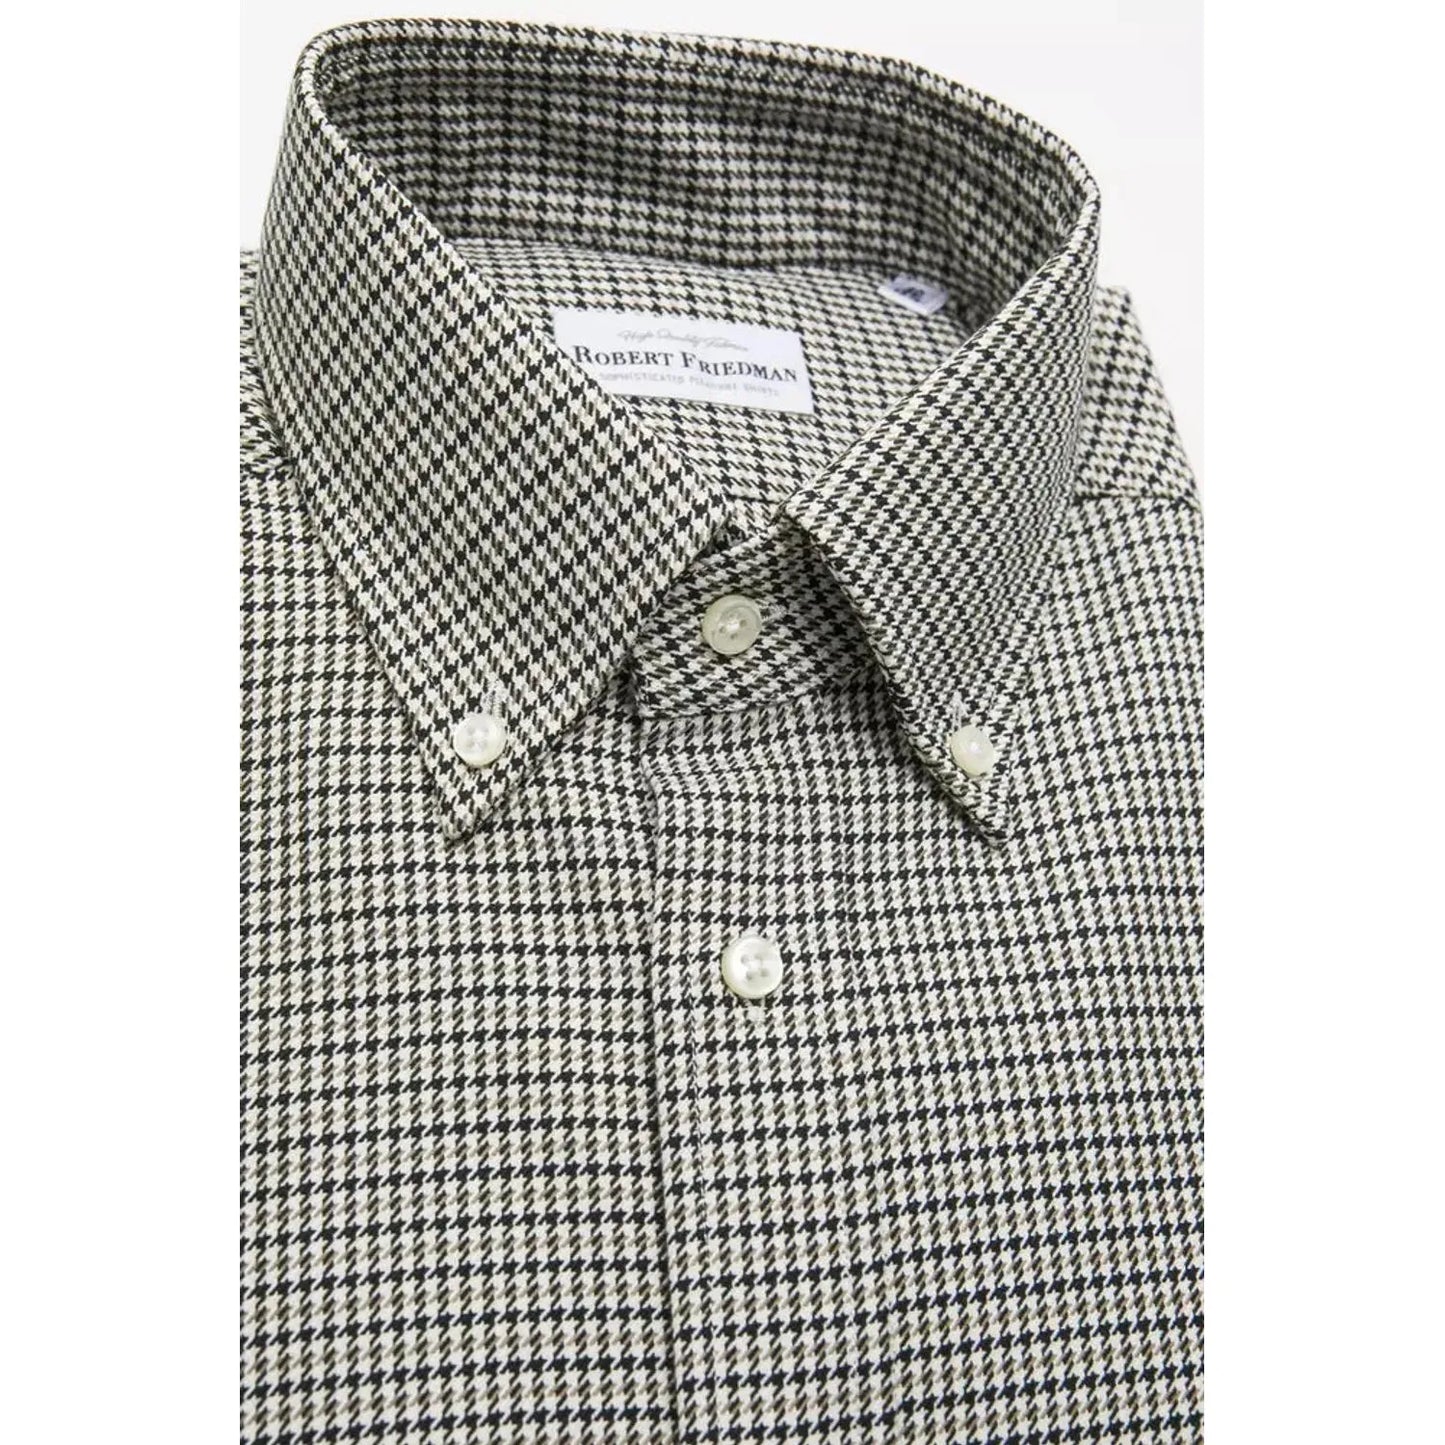 Robert Friedman Beige Cotton Button Down Regular Shirt beige-cotton-shirt-1 stock_product_image_20448_993220245-15-d9c823d7-99b.webp